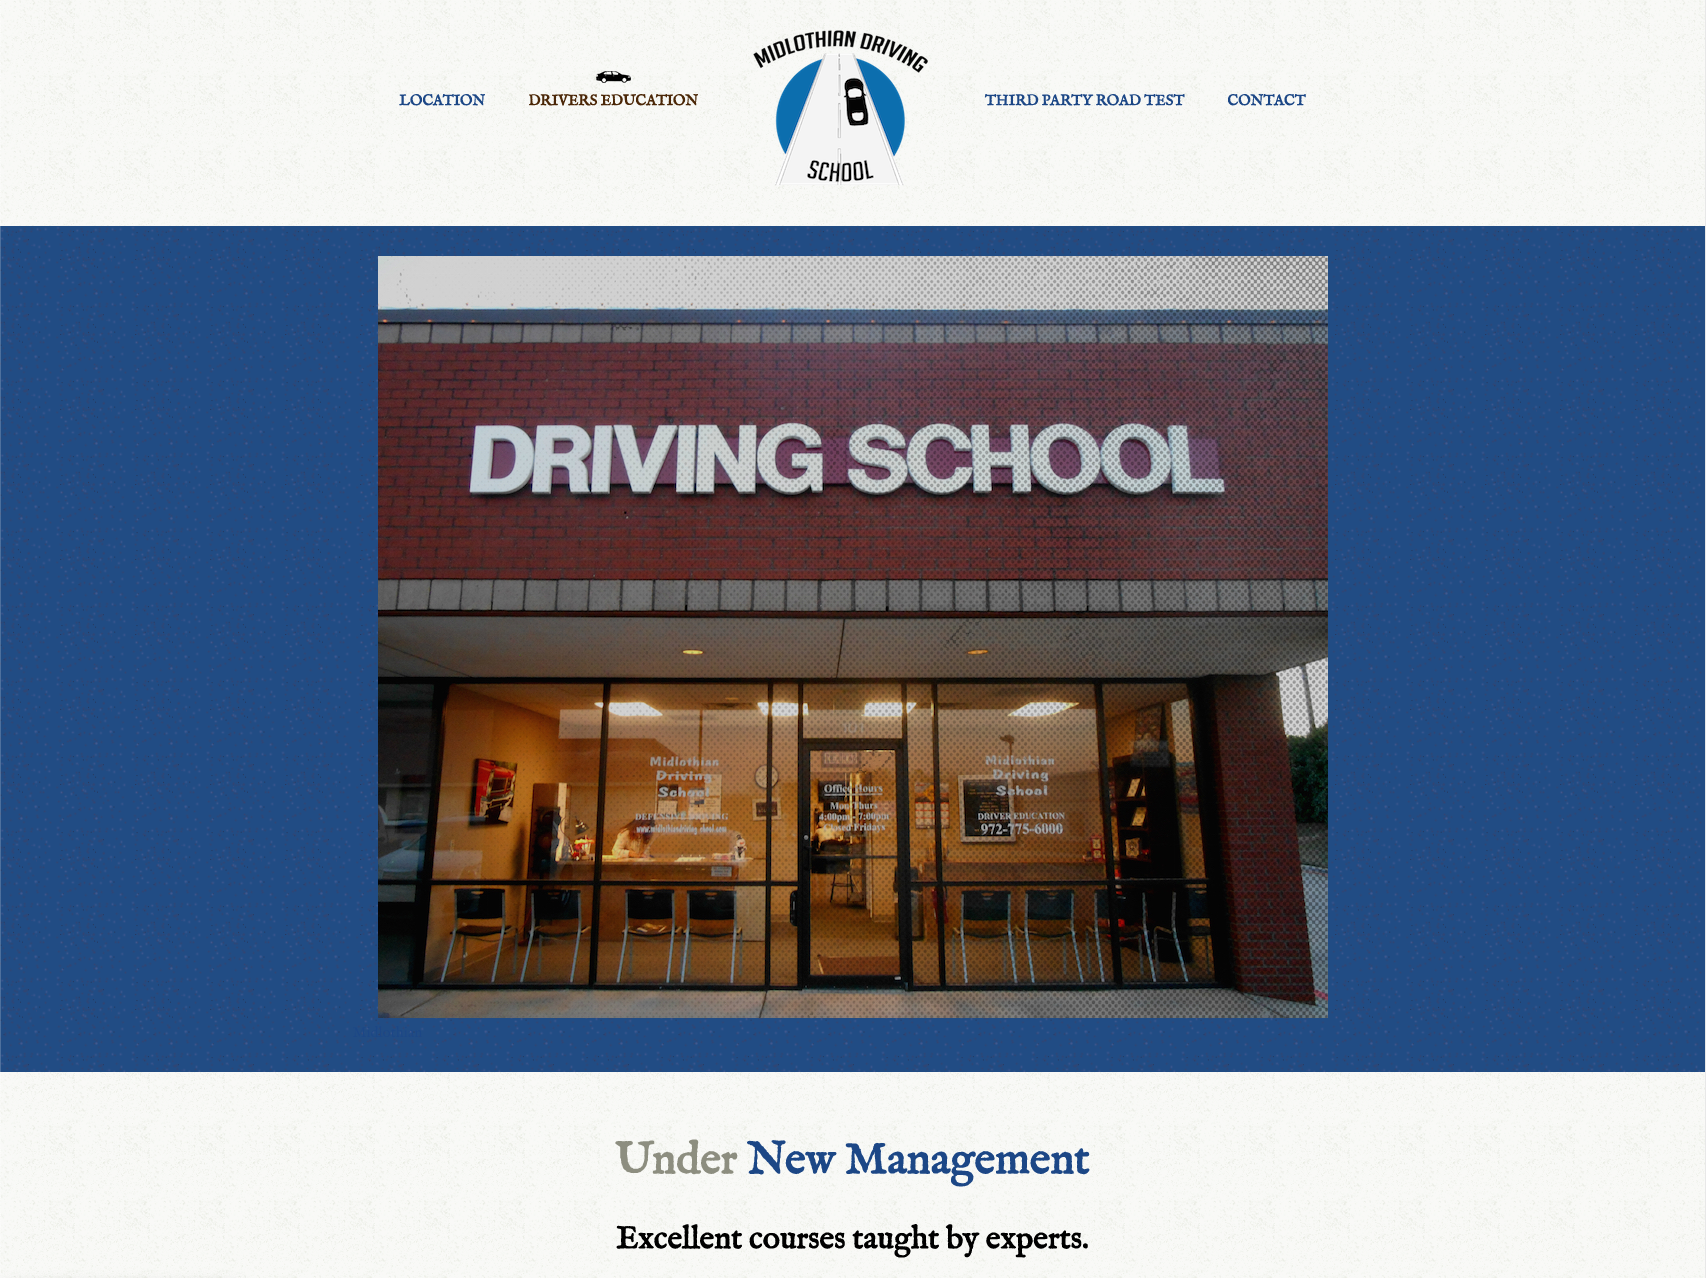 The driving school website